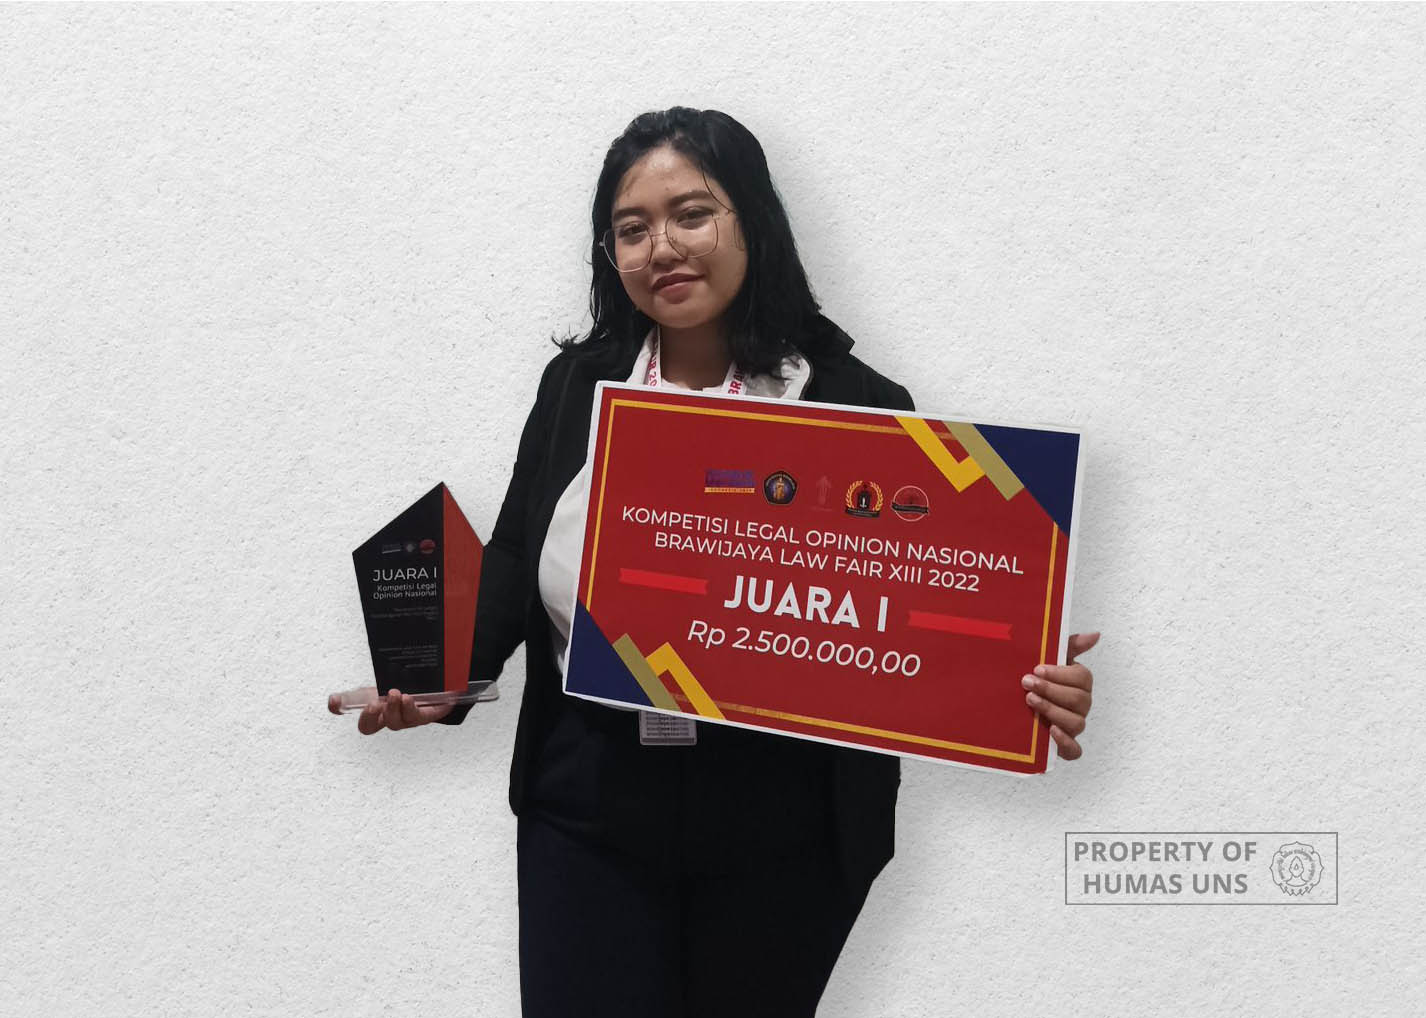 Membanggakan! Mahasiswa FH UNS Raih Juara 1 Lomba Legal Opinion Brawijaya Law Fair XIII 2022